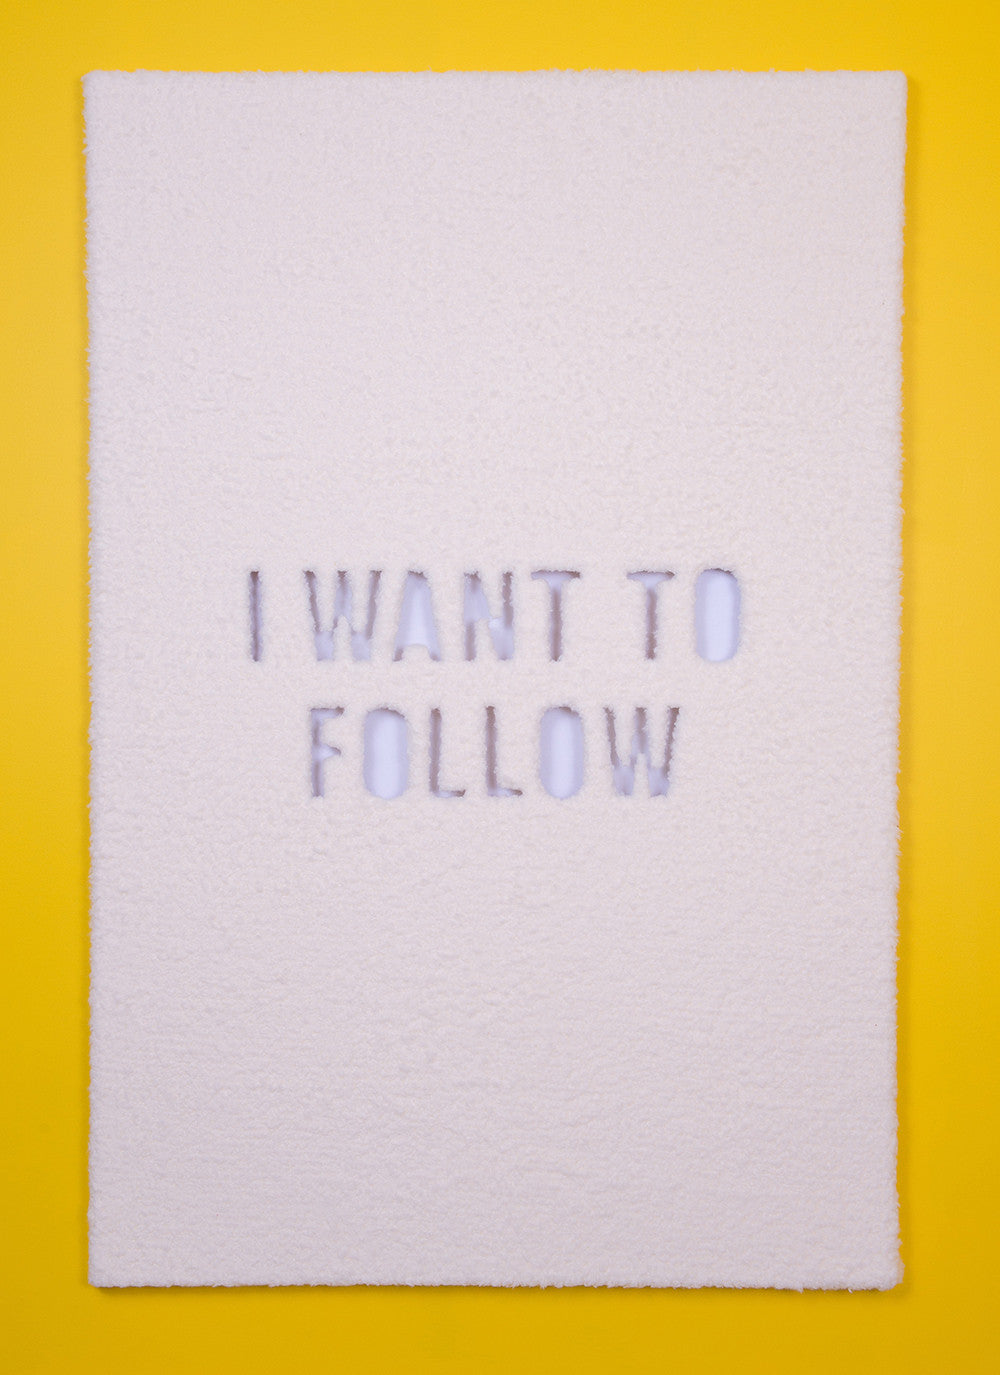 Jonathan Rosen, "Follow"